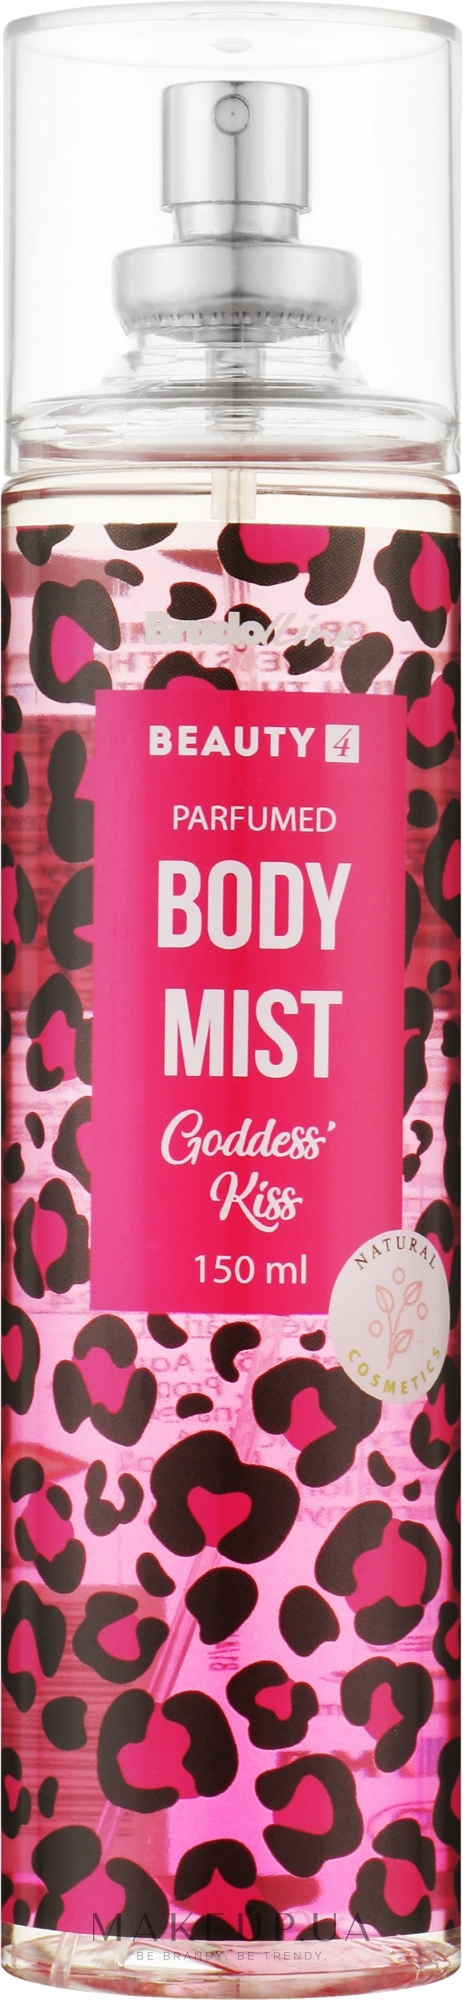 Мист для тела "Goddess Kiss" - Bradoline Beauty 4 Body Mist  — фото 150ml